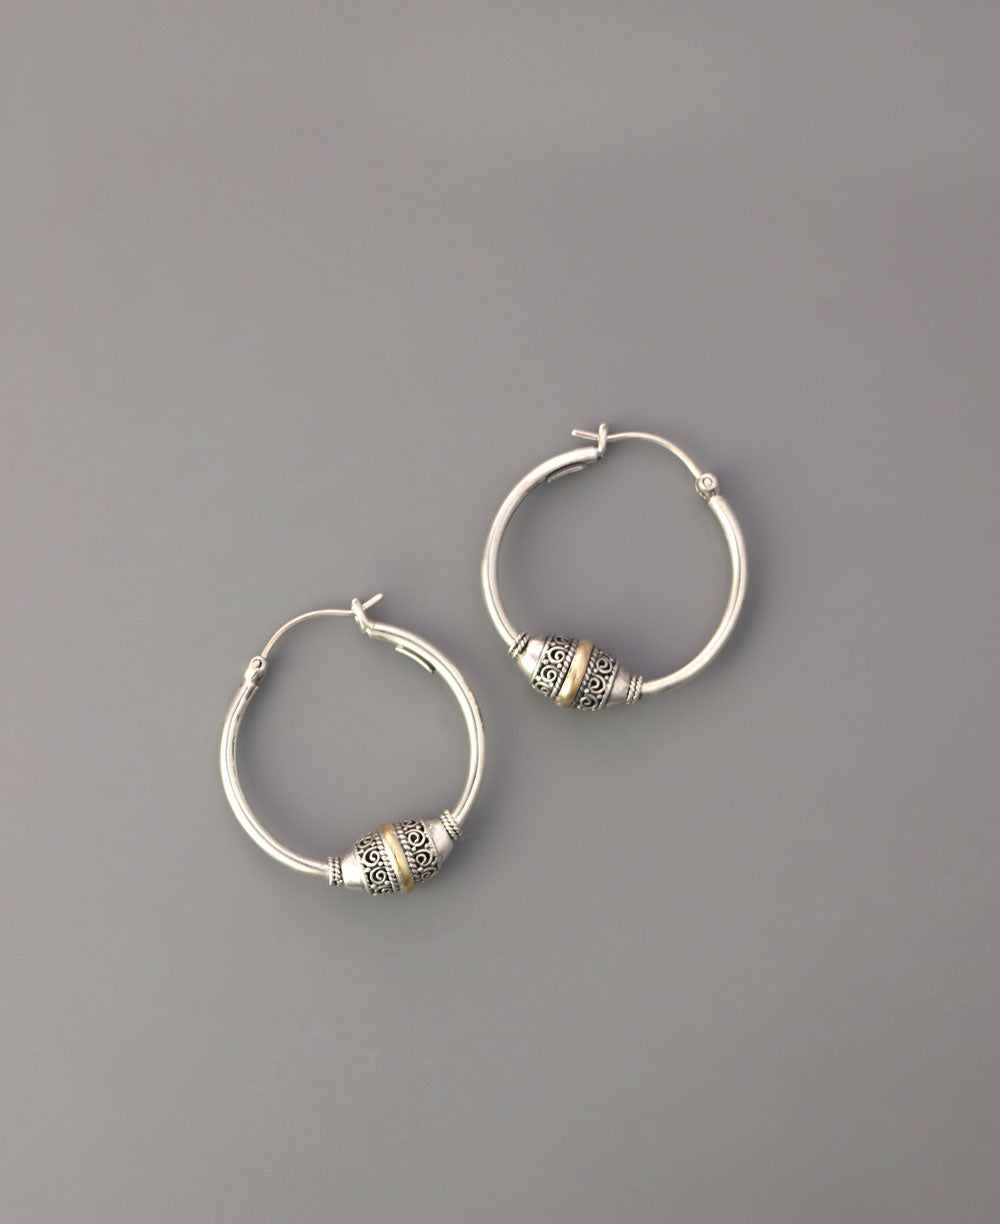 Sterling silver hoop earrings with filigree design